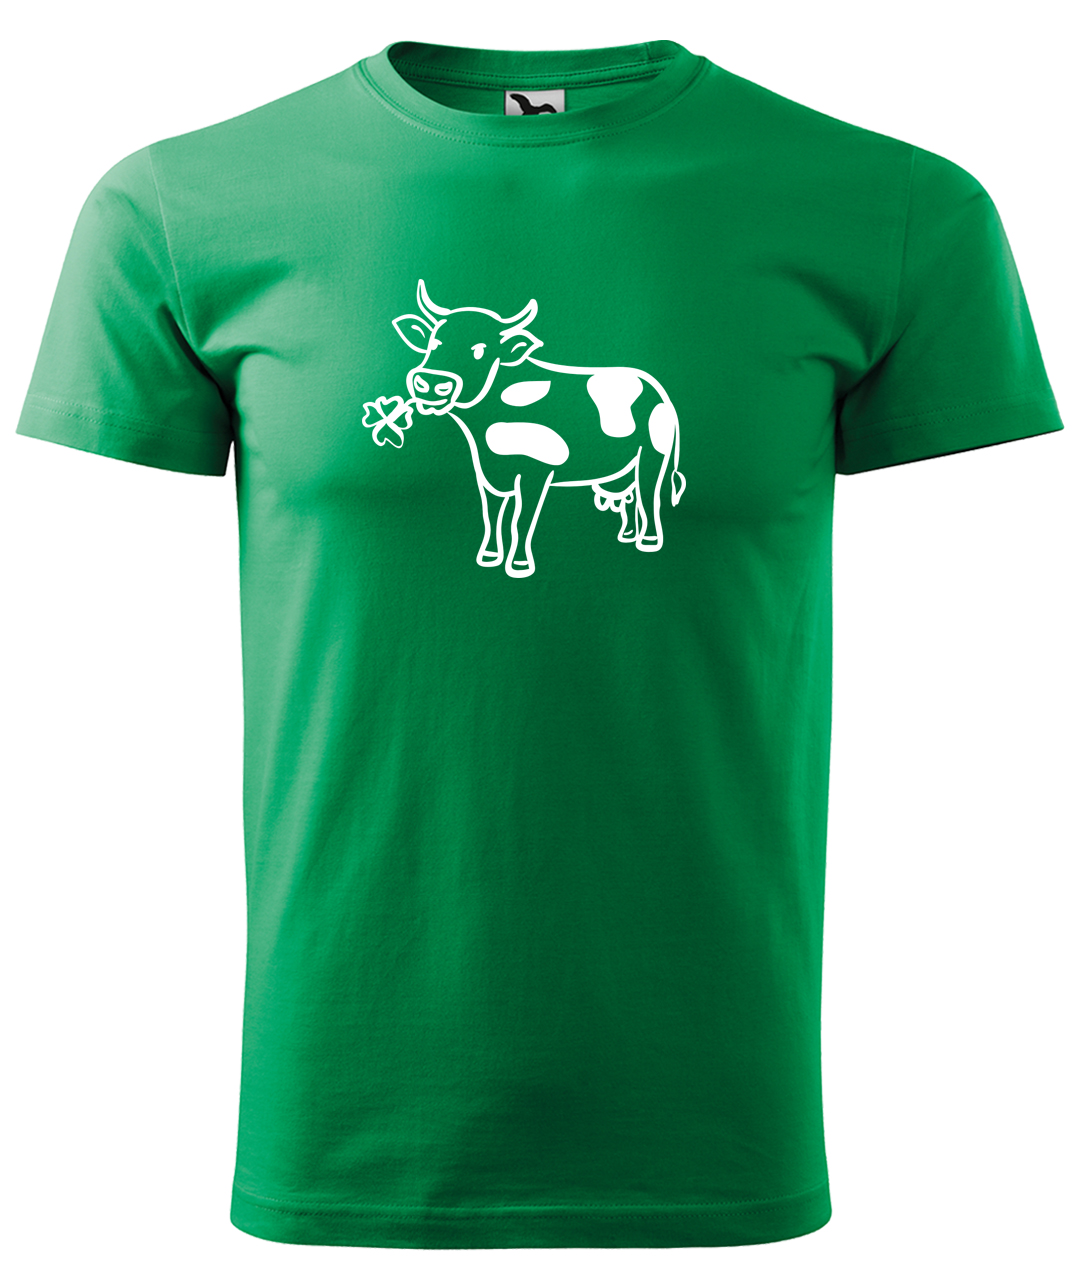 Dětské tričko s krávou - Kravička a jetel Velikost: 4 roky / 110 cm, Barva: Středně zelená (16), Délka rukávu: Krátký rukáv